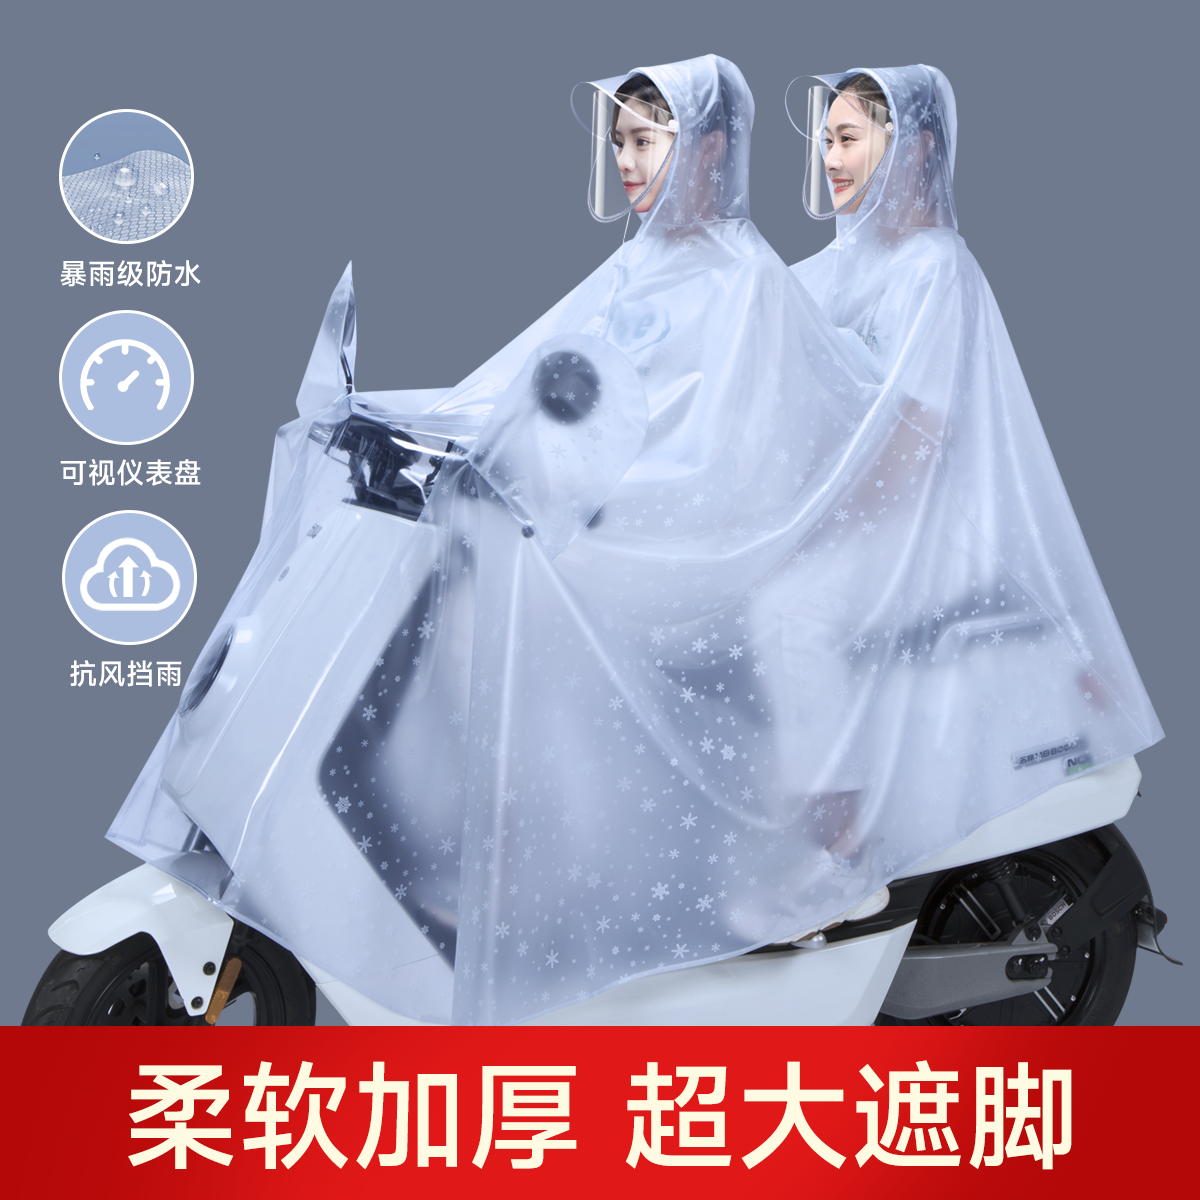 电动摩托车雨衣双人女款新款电瓶车母子亲子2人长款全身防暴雨披